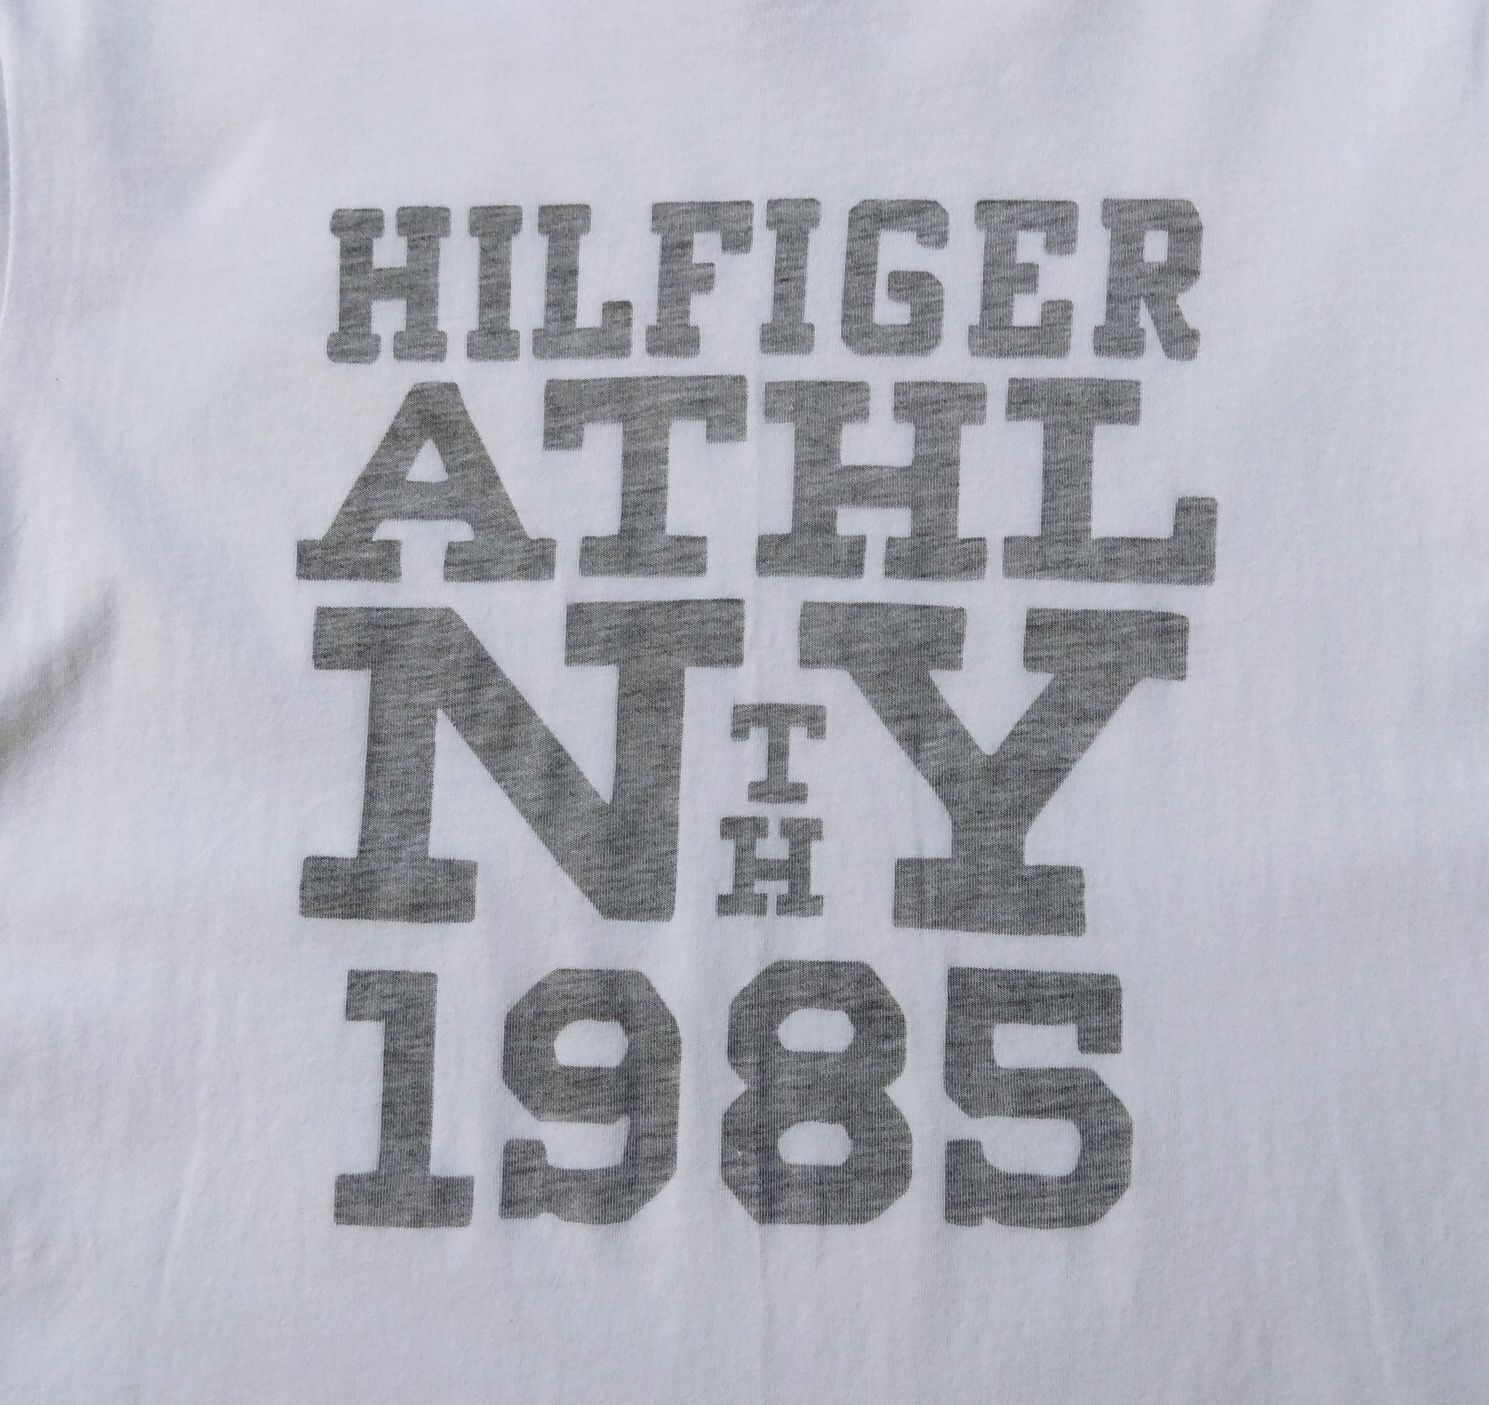 Tommy Hilfiger футболка белая оригинал S